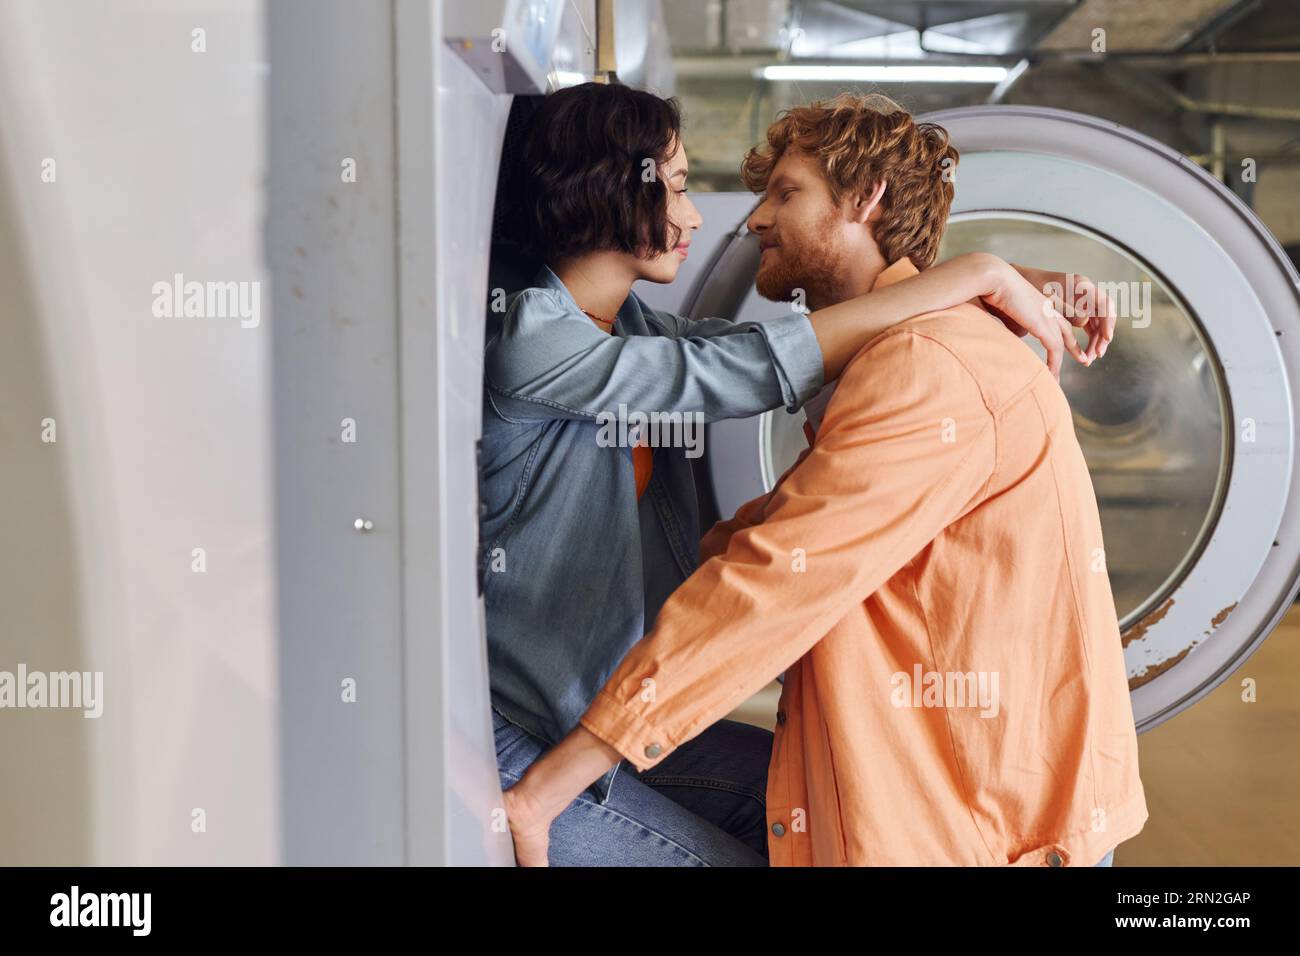 vue latérale de jeune femme asiatique romantique embrassant son petit ami près de la machine à laver dans la buanderie à pièces Banque D'Images